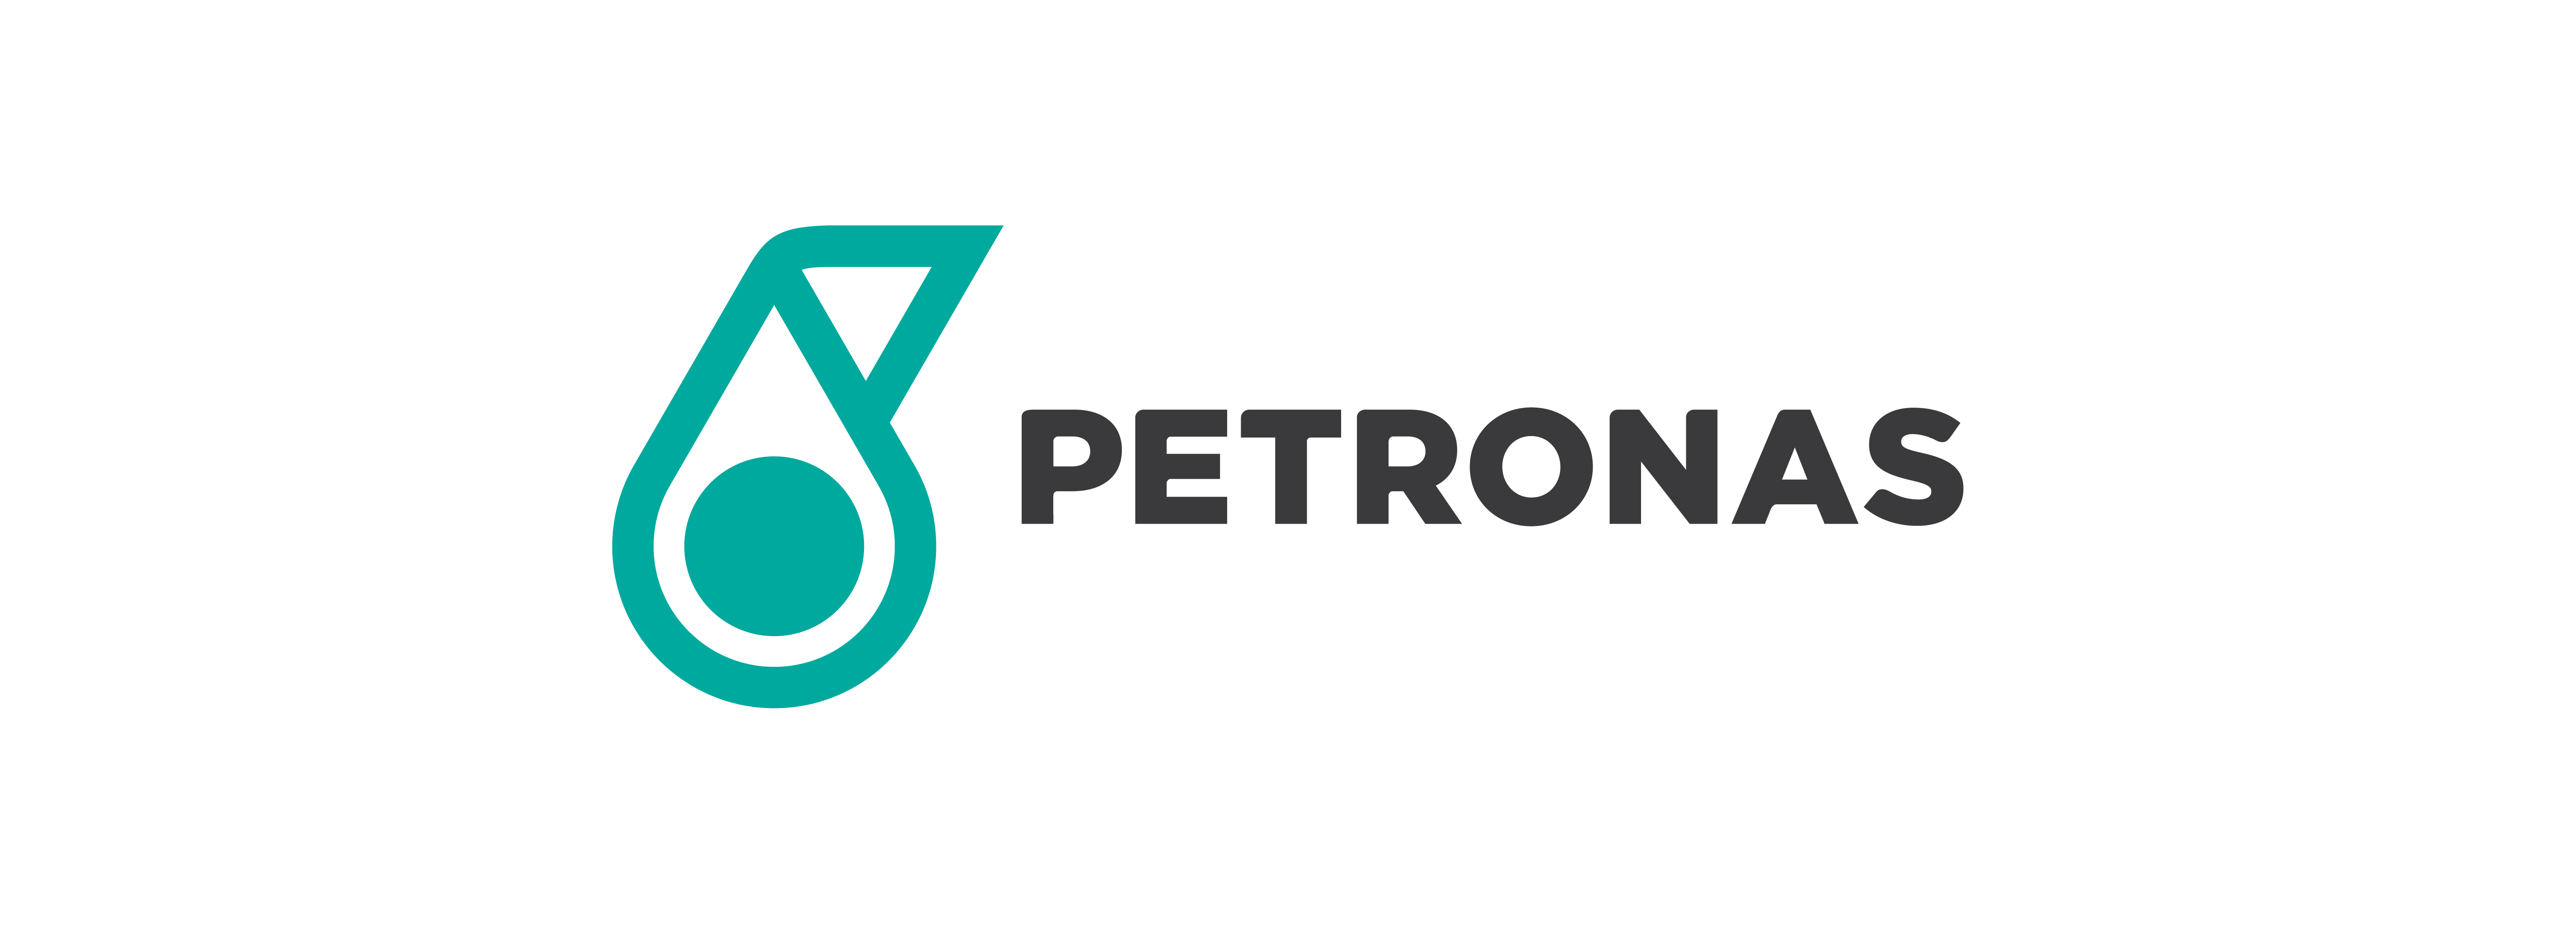 Petronas-01@2x